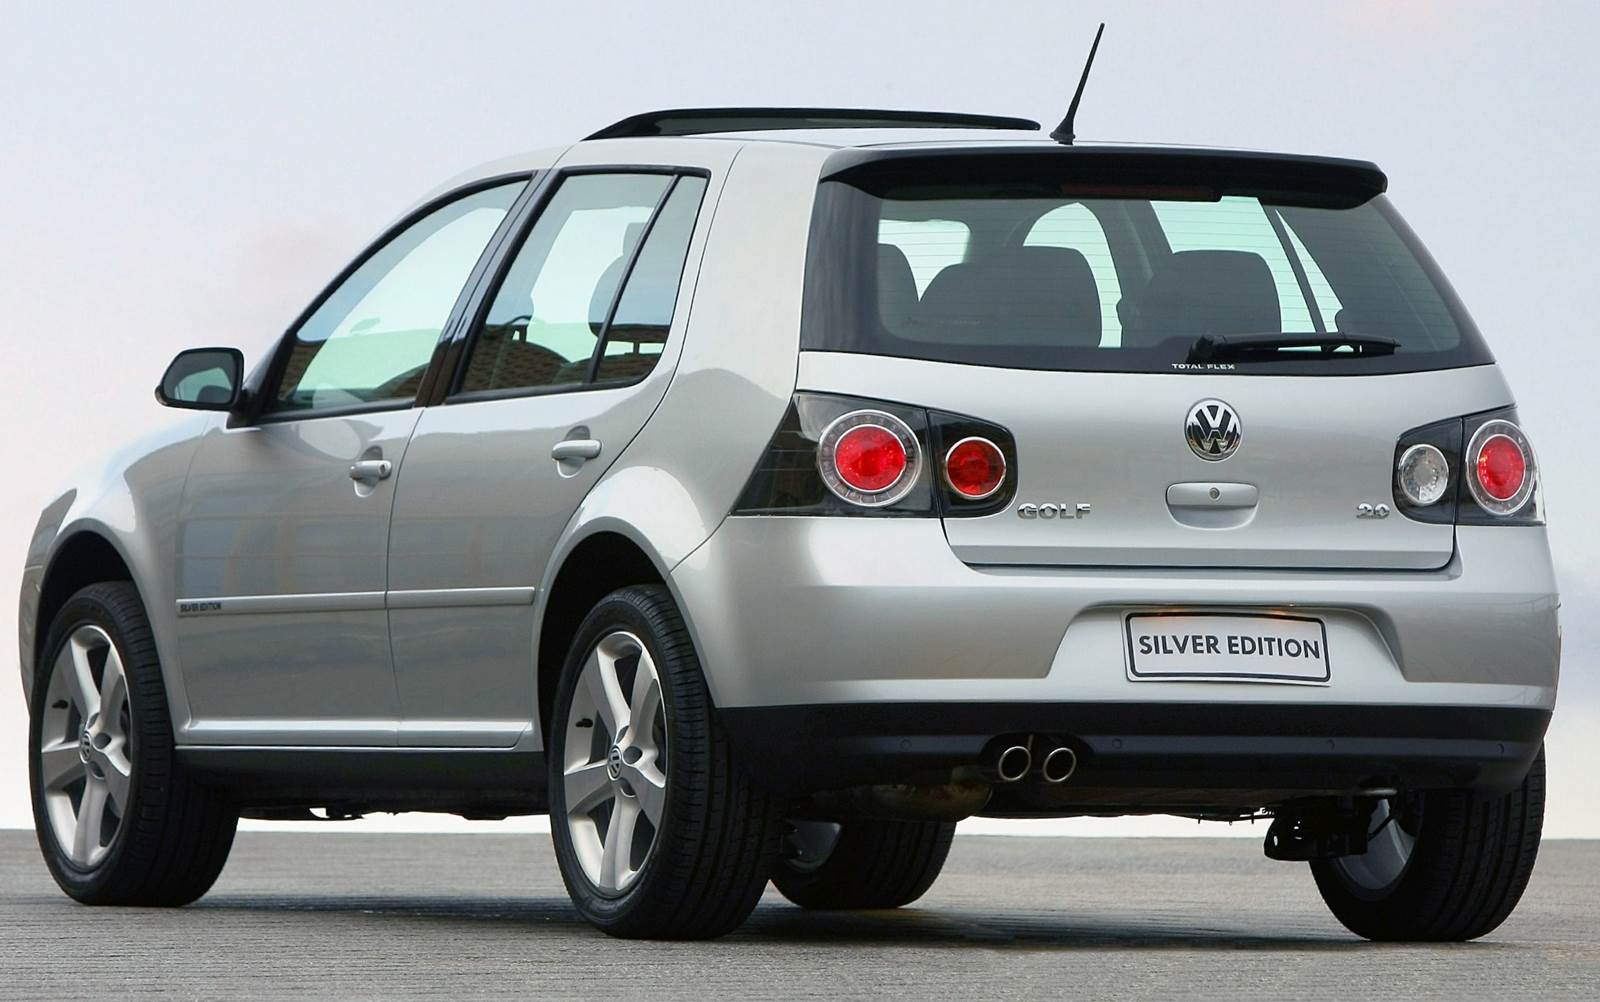 VW Golf 2010 Silver Edition